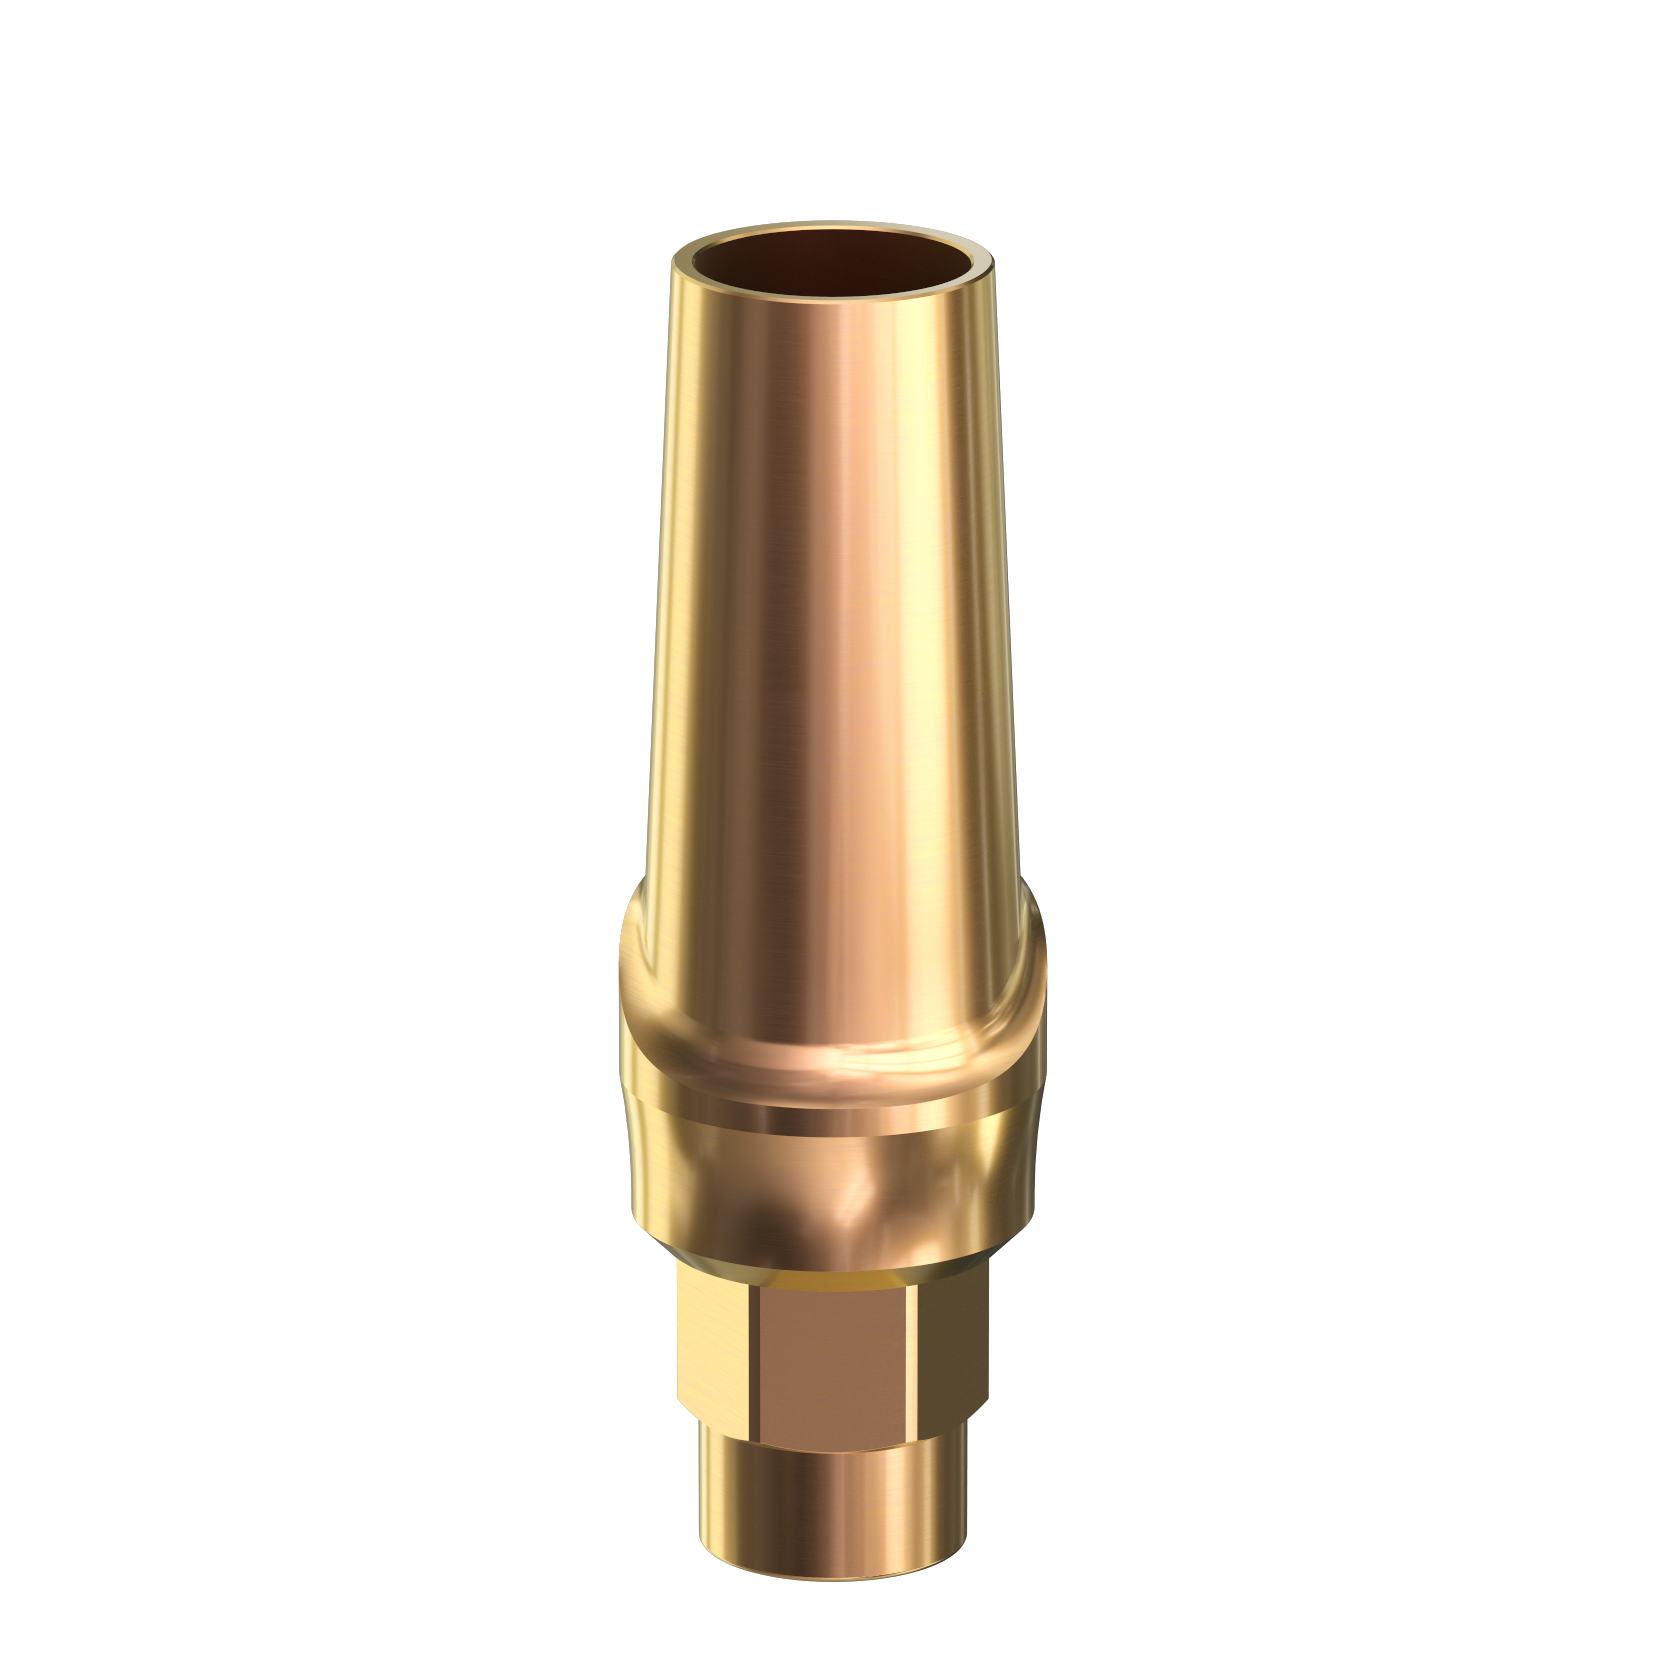 SA35-1NM-contoured-straight-abutment-3.7mmdx1.0mmlx3.5mmp